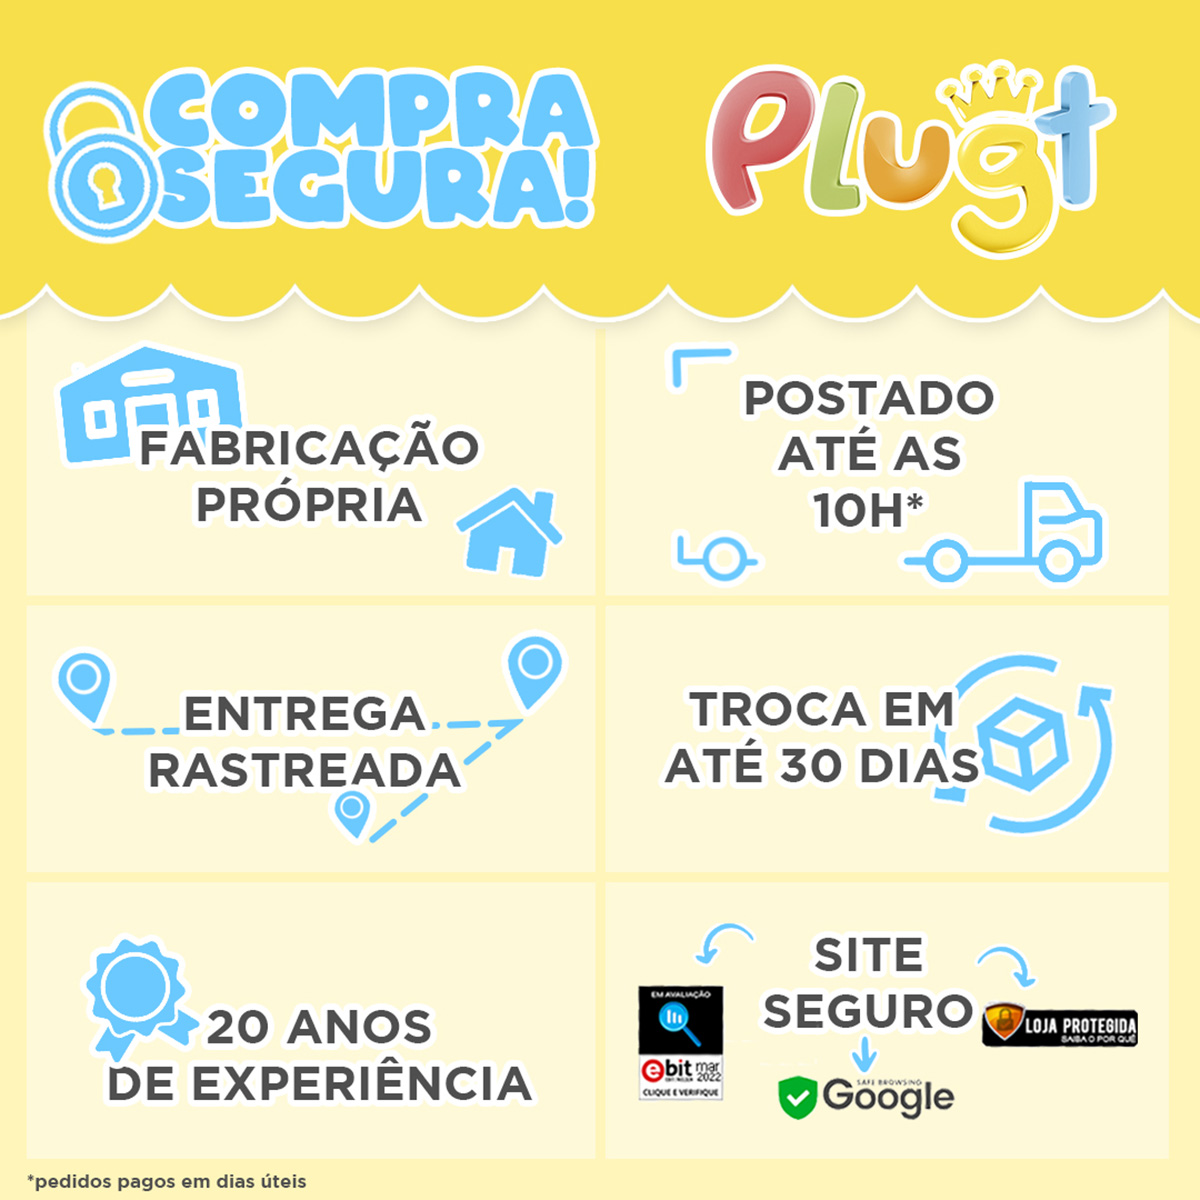 Sandália Plugt Play Coração Estrela Gamer Pink - Foto 5